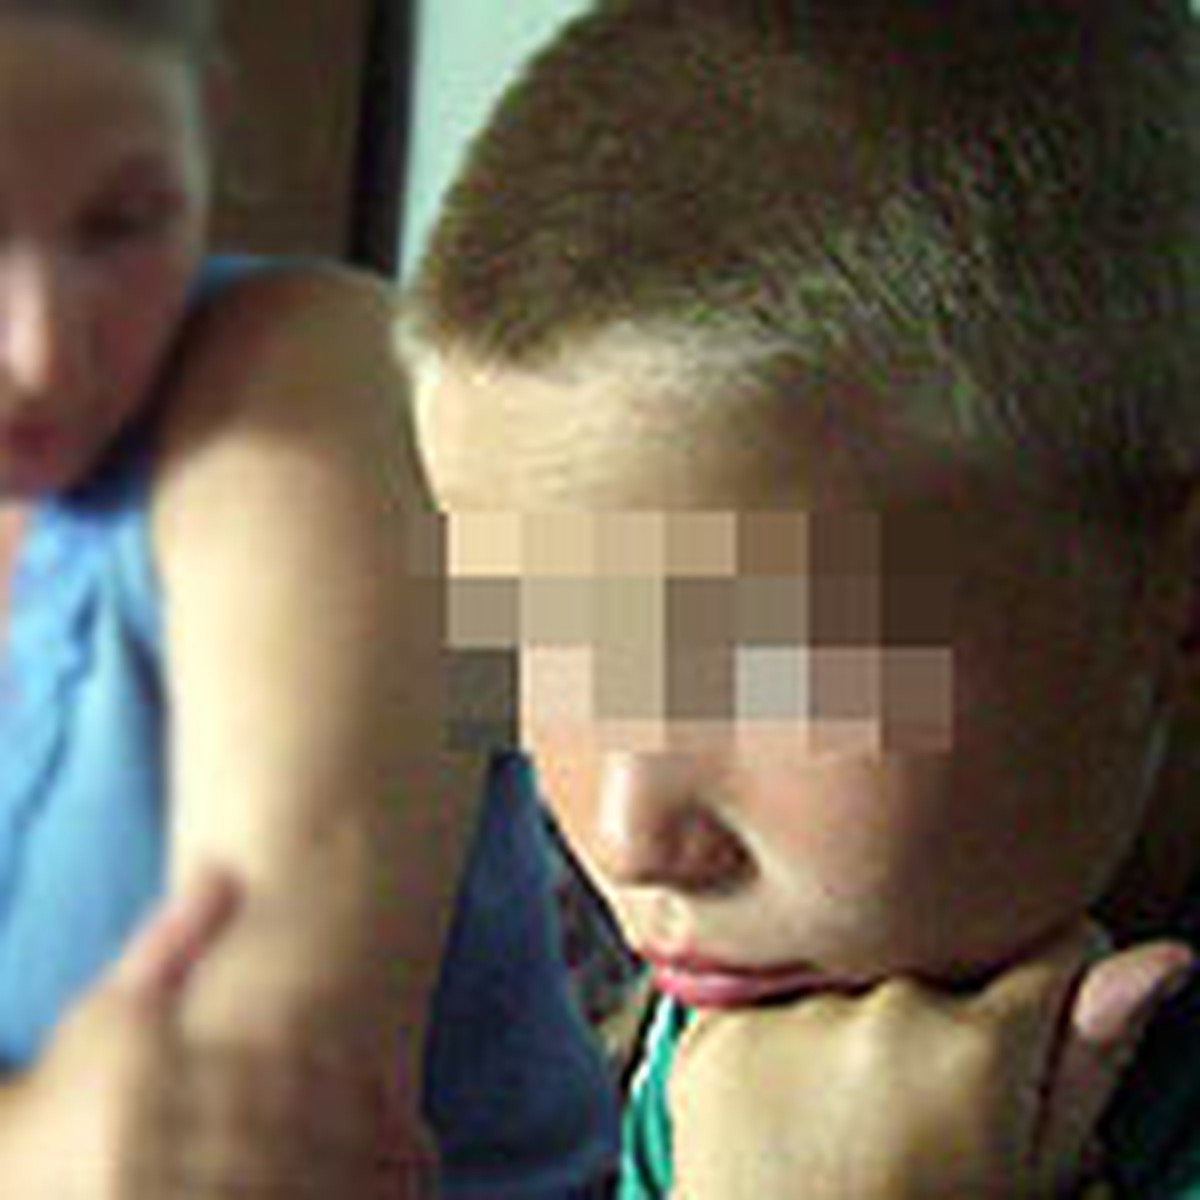 гей видео изнасилование в детском доме фото 60